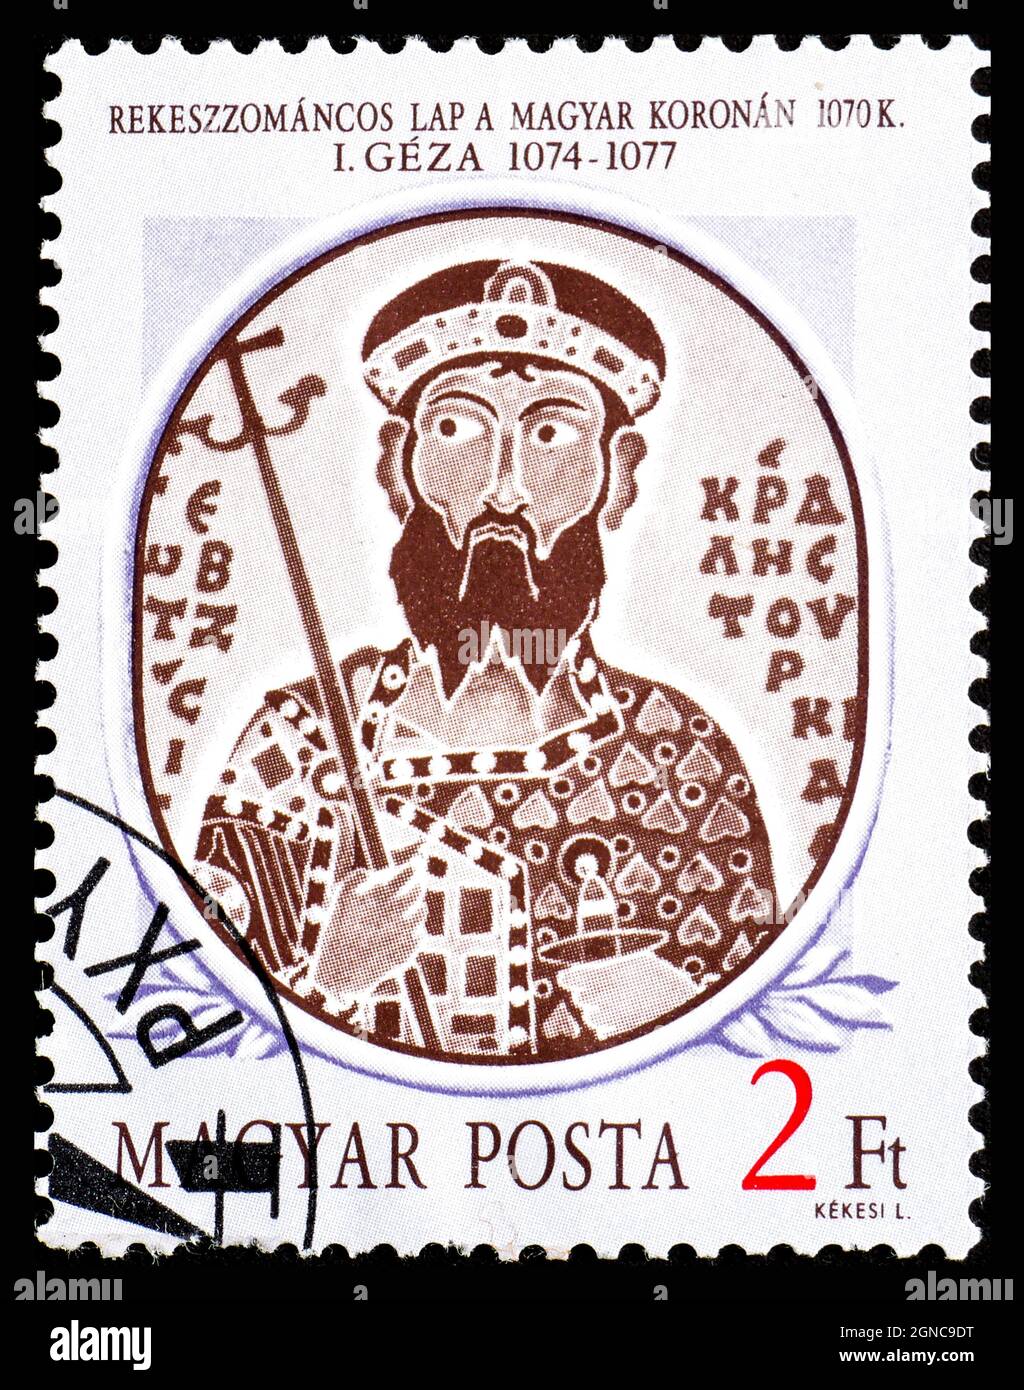 HUNGRÍA - CIRCA 1986: Un sello impreso en Hungría de la edición de los Reyes Húngaros 1st muestra Geza I retrato esmaltado en la corona húngara, 1070 Foto de stock